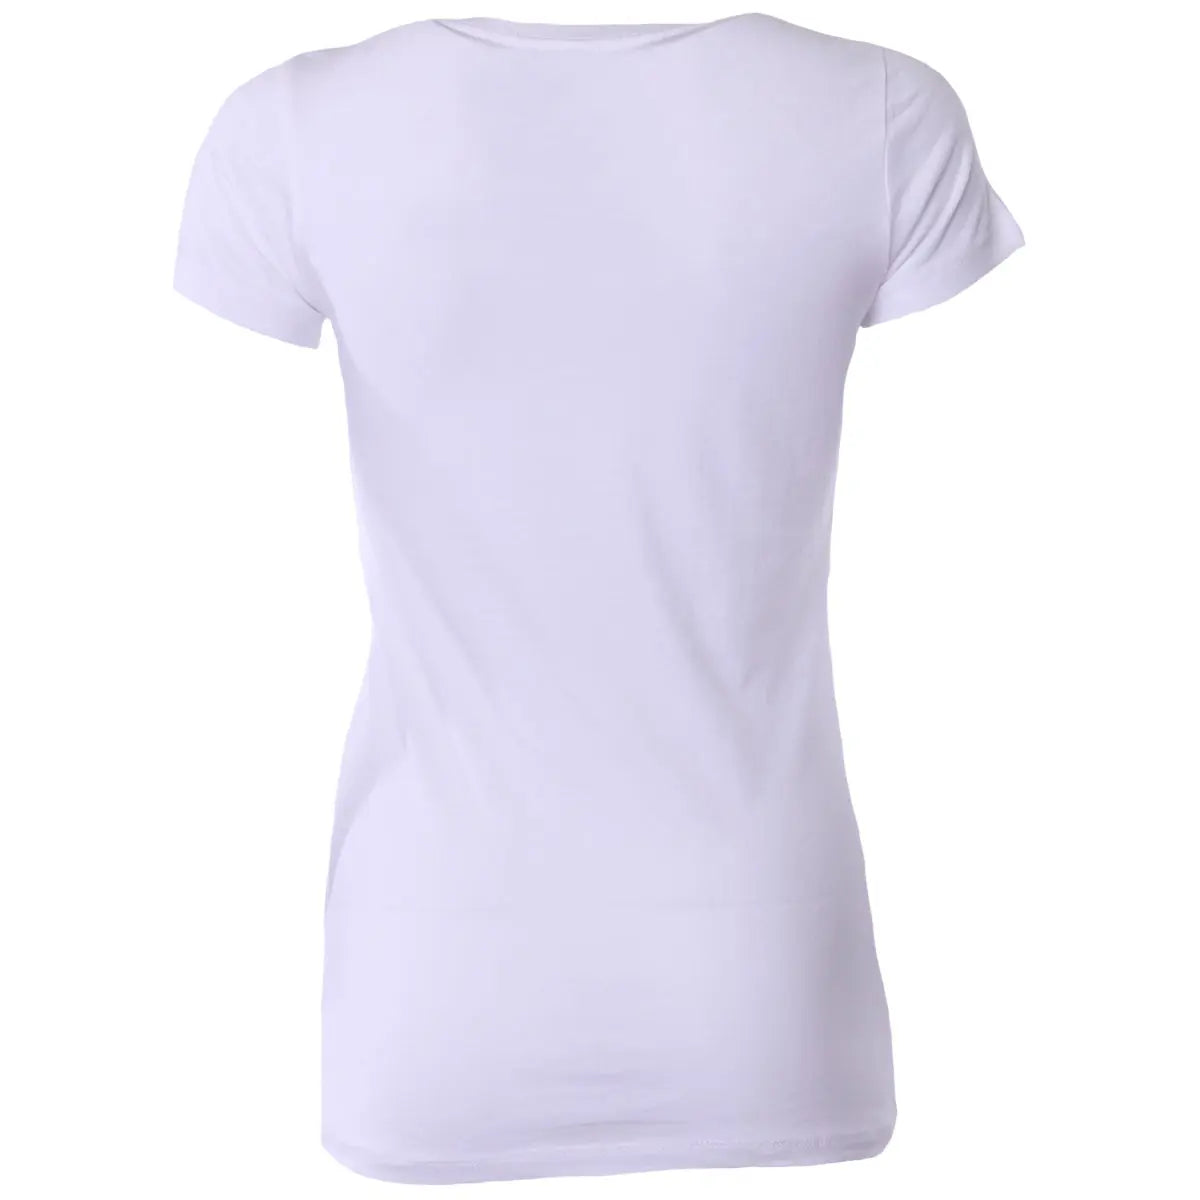 Forza Sports Women's "Origins" MMA T-Shirt - White Forza Sports